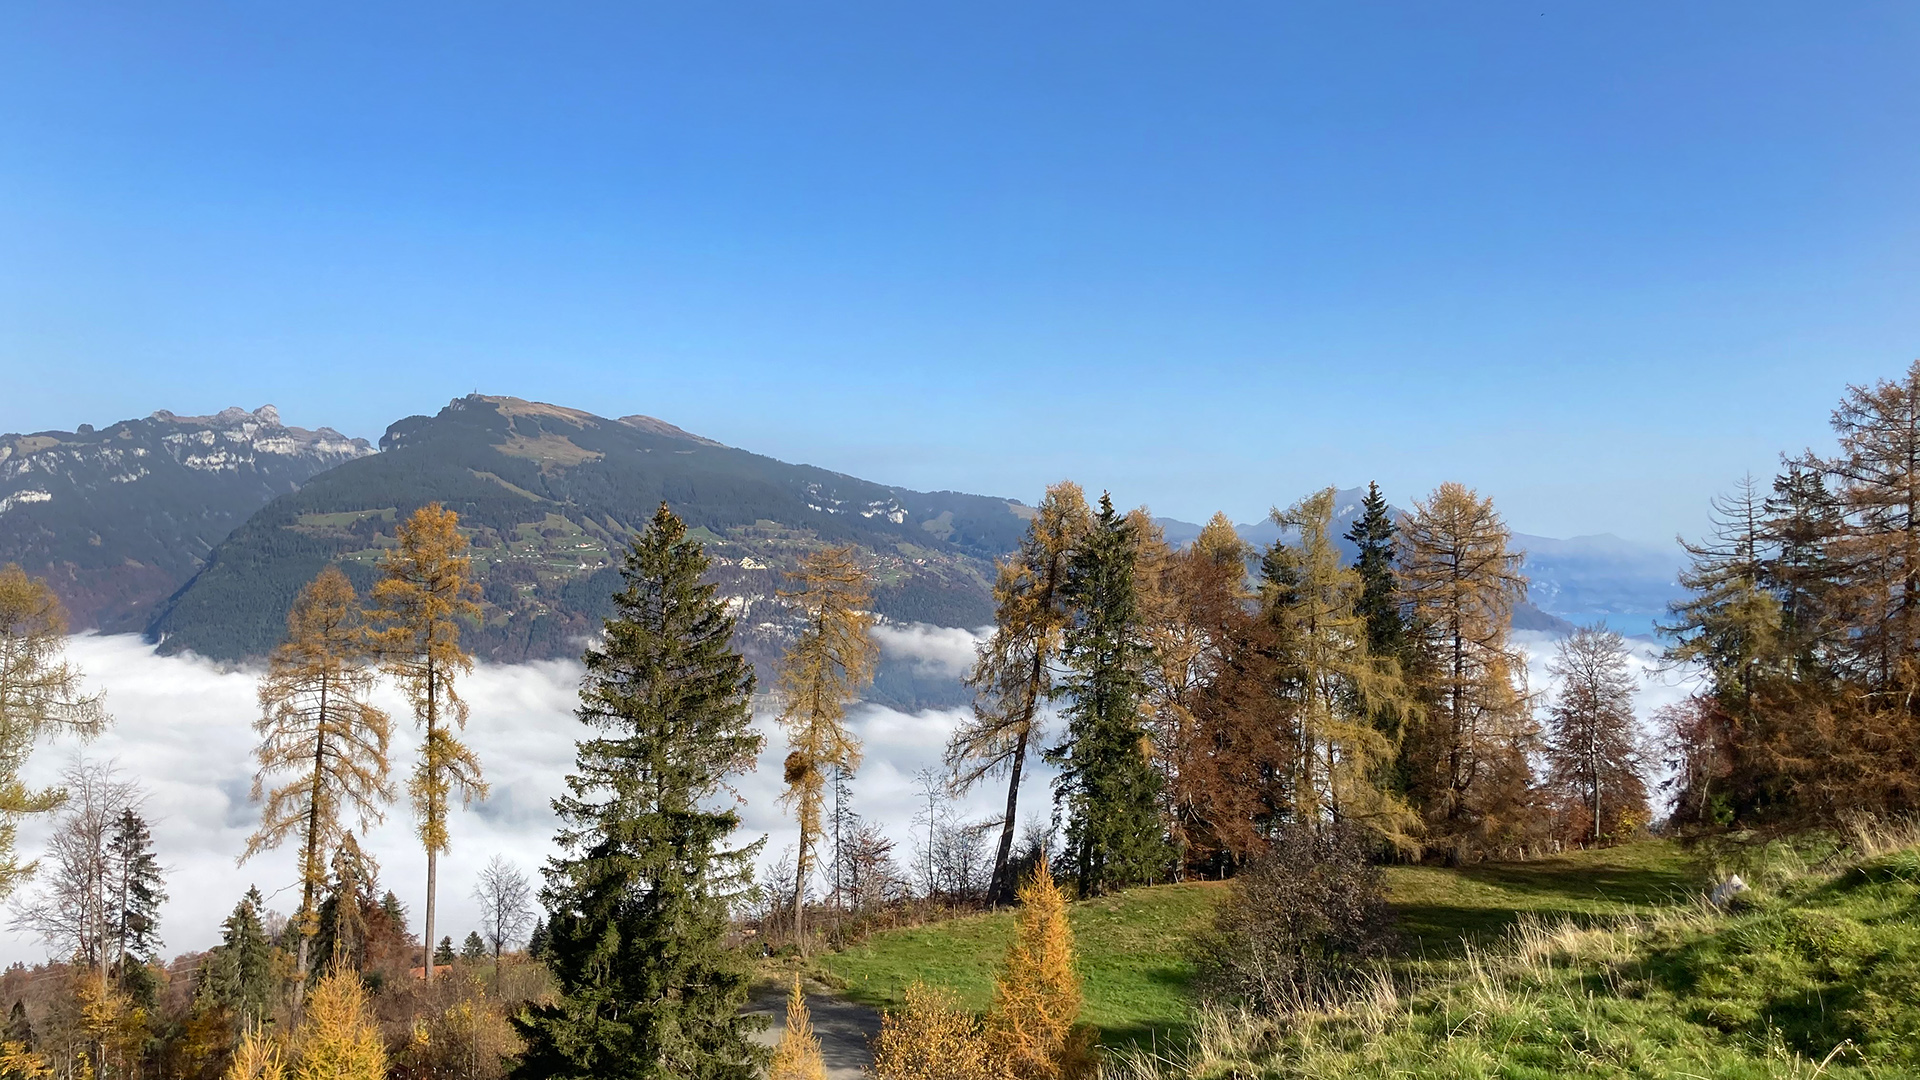 Blickpunkt Berner Oberland im November 2020